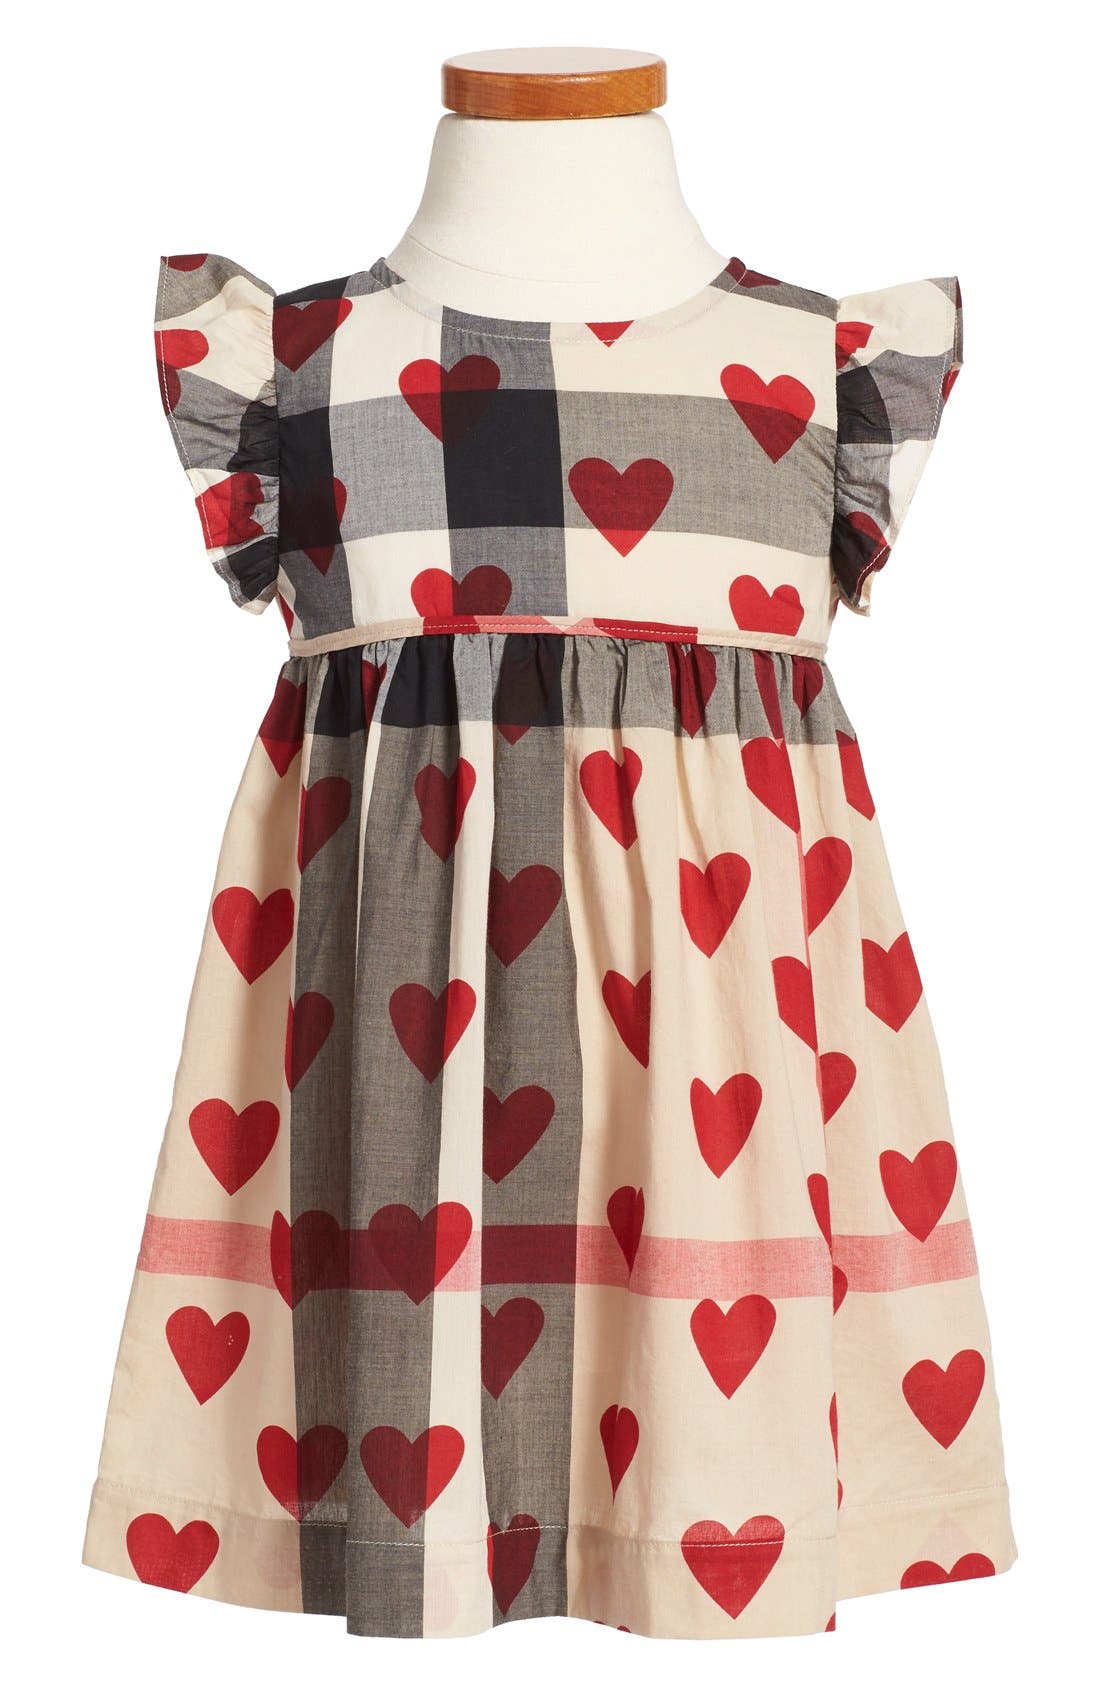 burberry heart dress